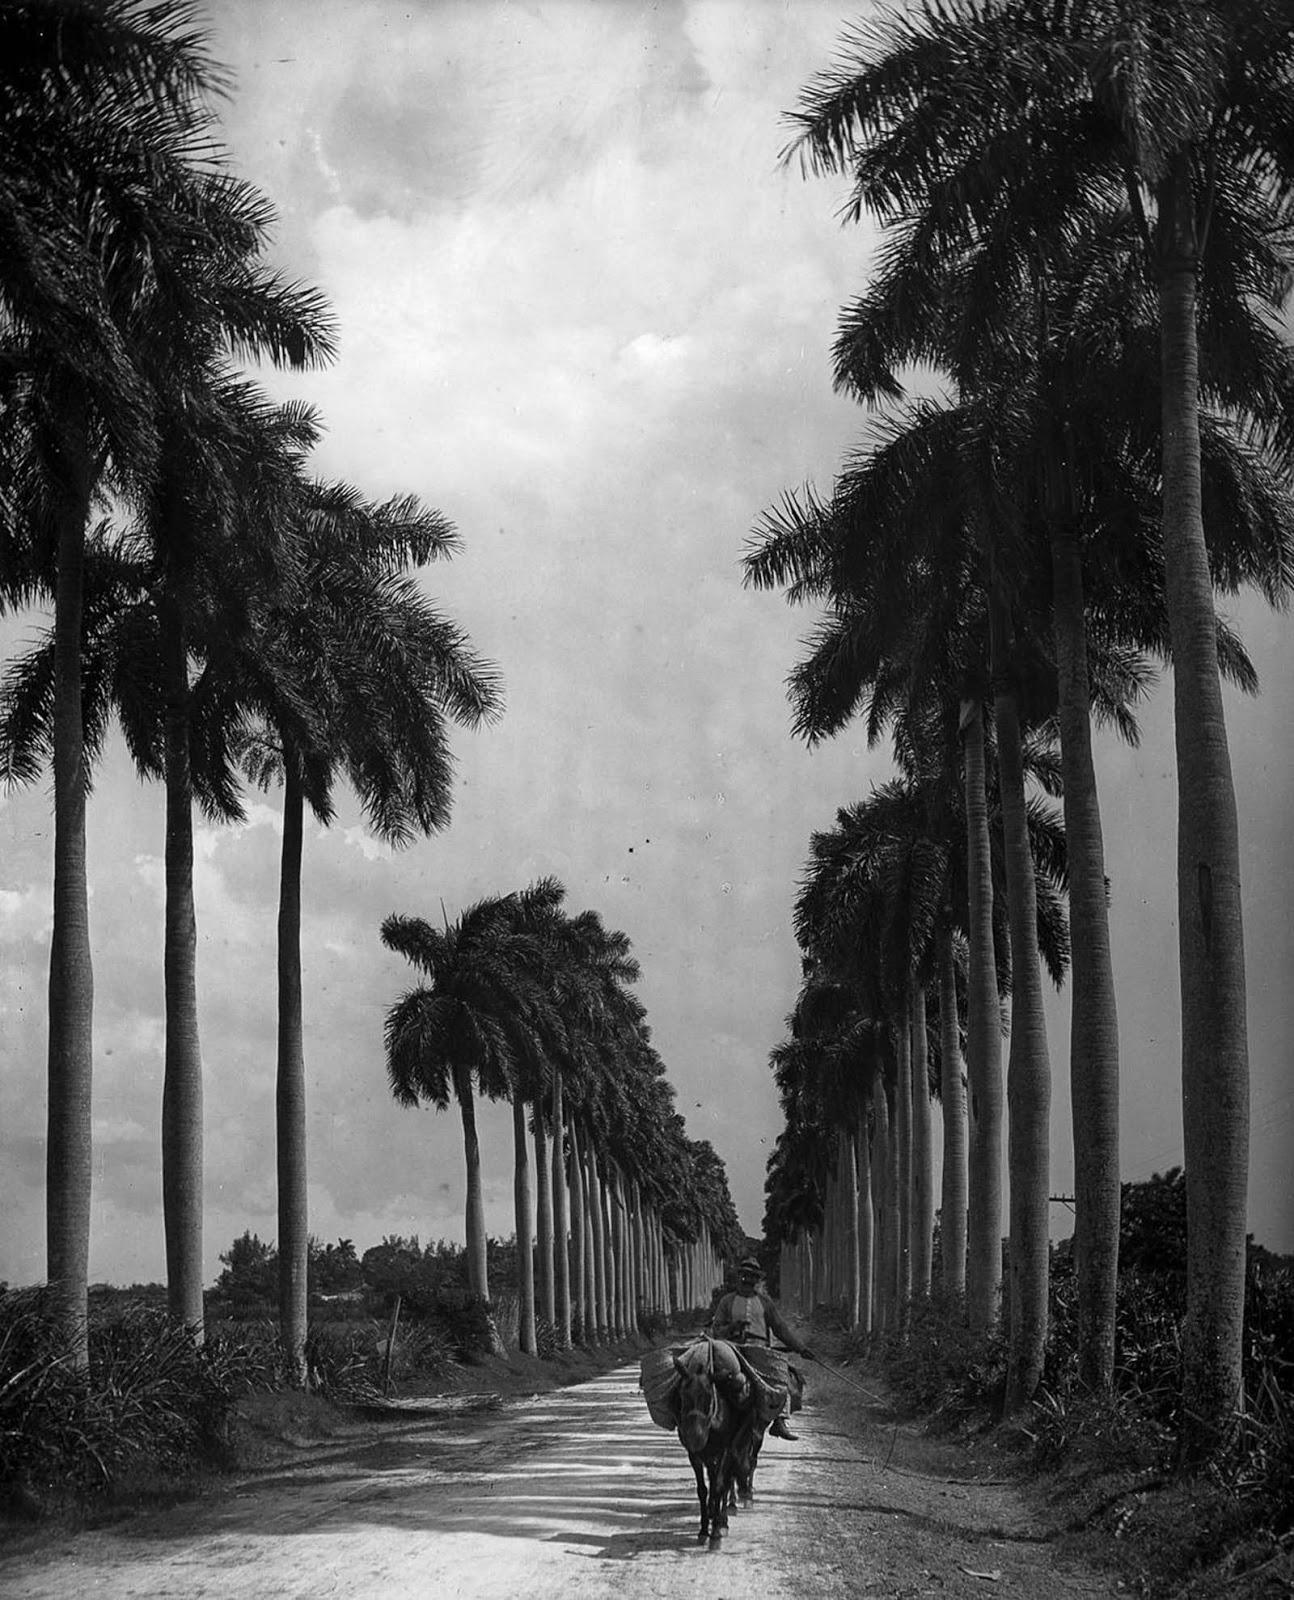 Les rues animées de la Vieille Havane, 1890-1910